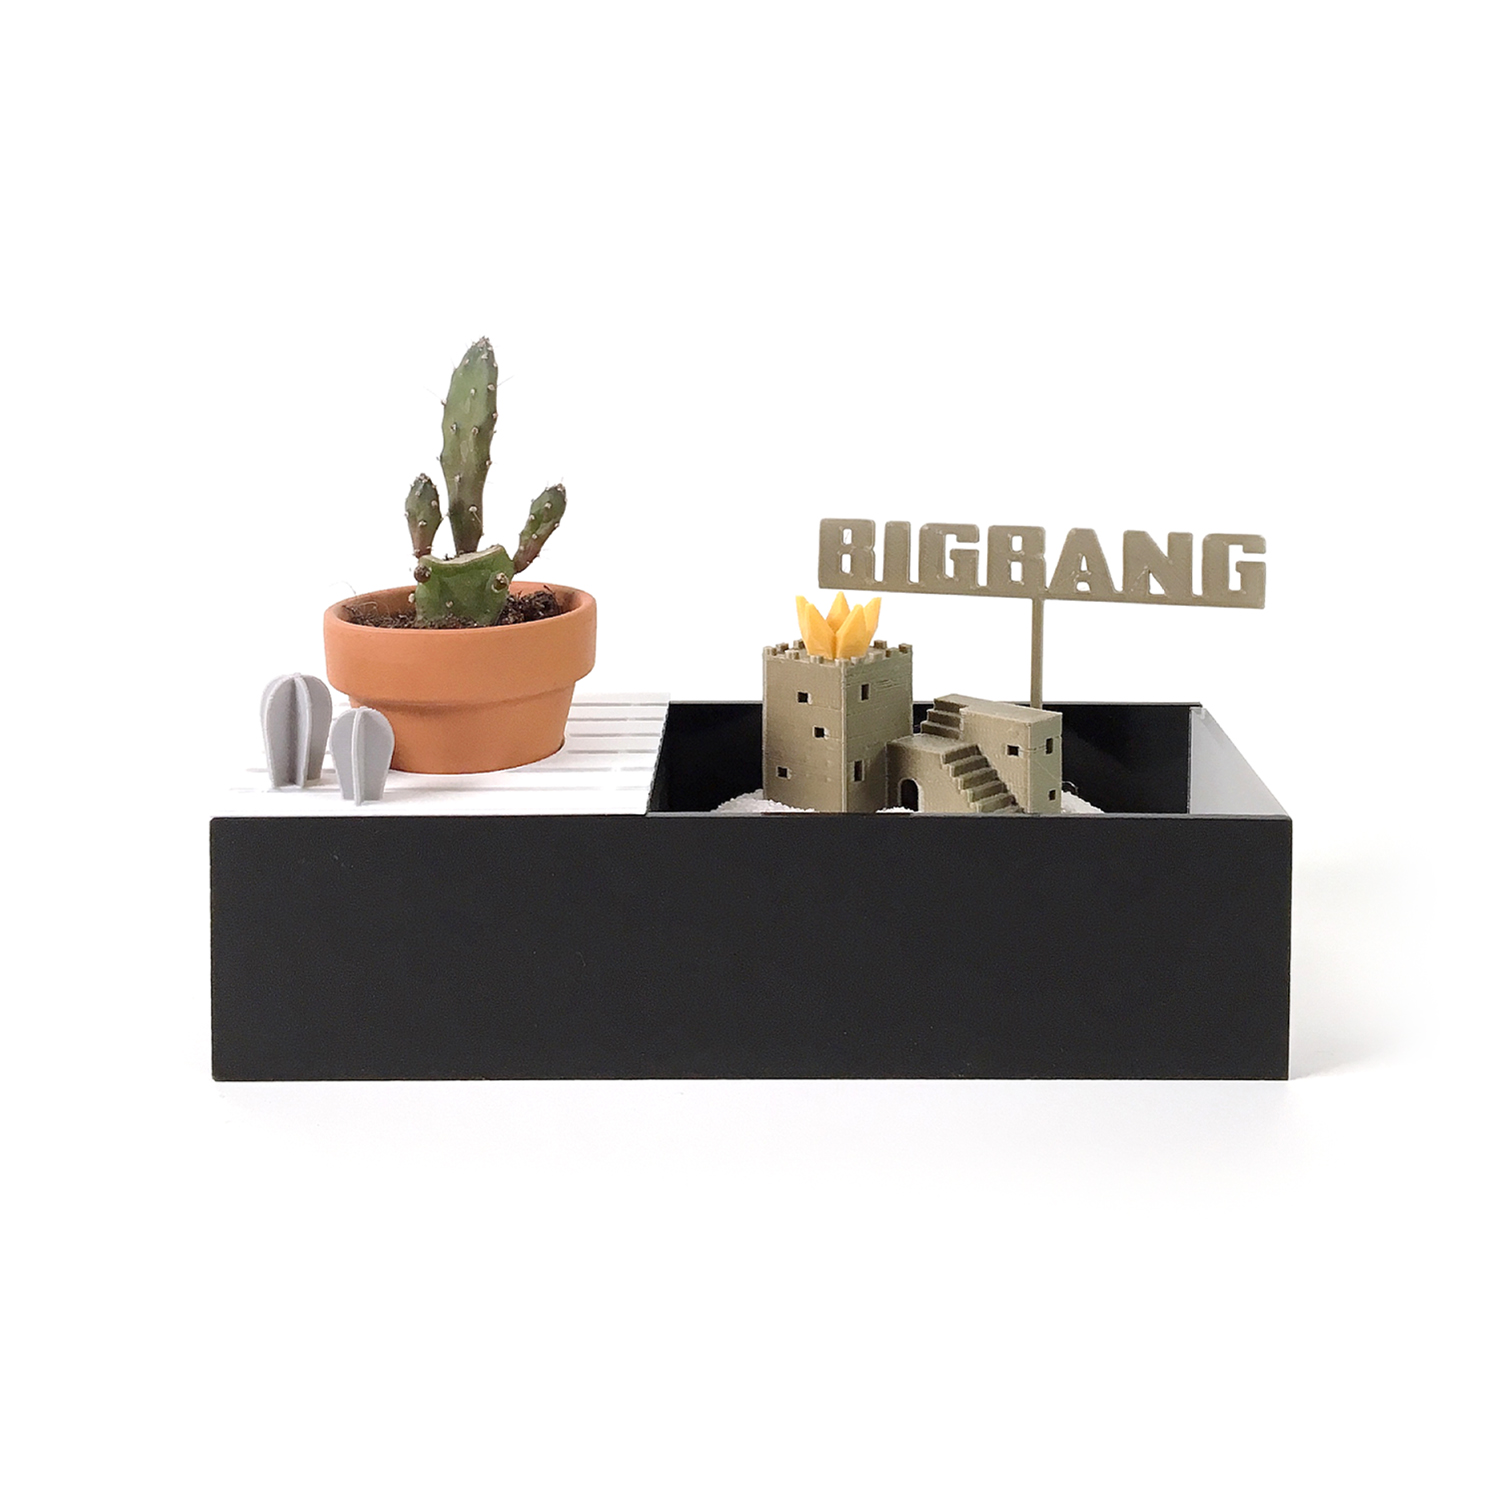 [LIVESLOW] BIGBANG PLANTS KIT with jammm